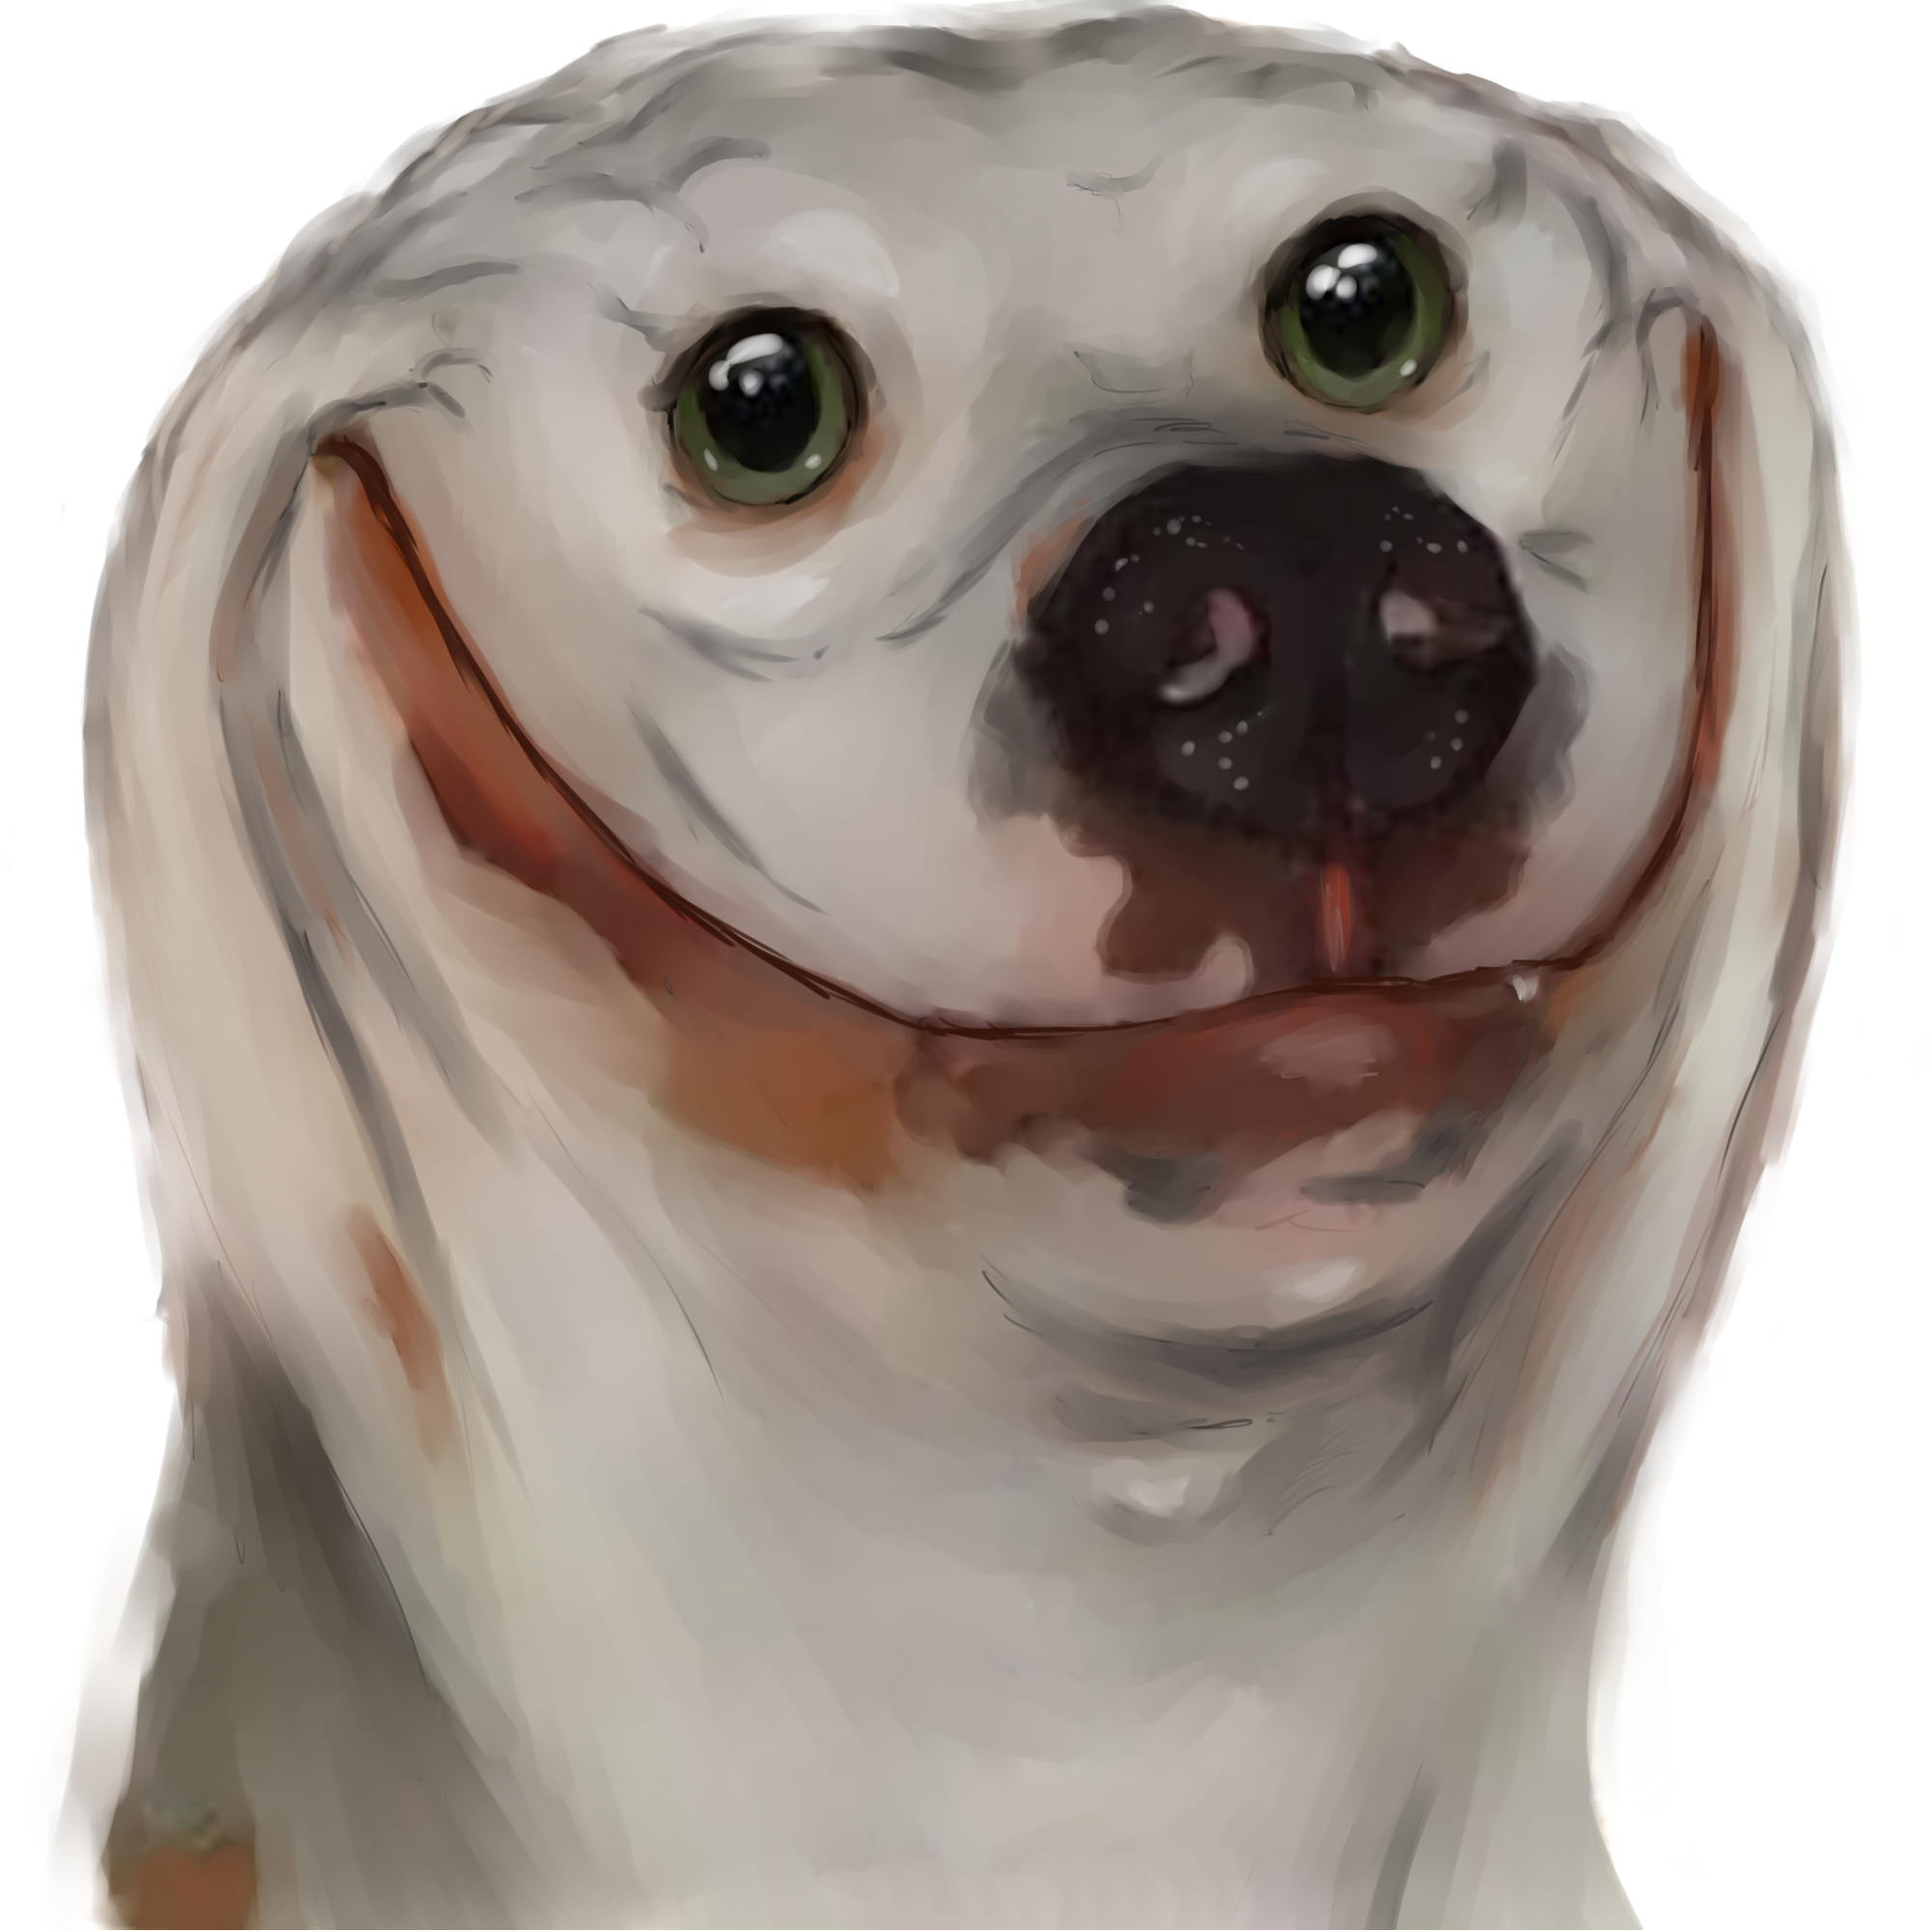 Meme avatars. Собака улыбается. Упоротая ава. Собака улыбака аватар.